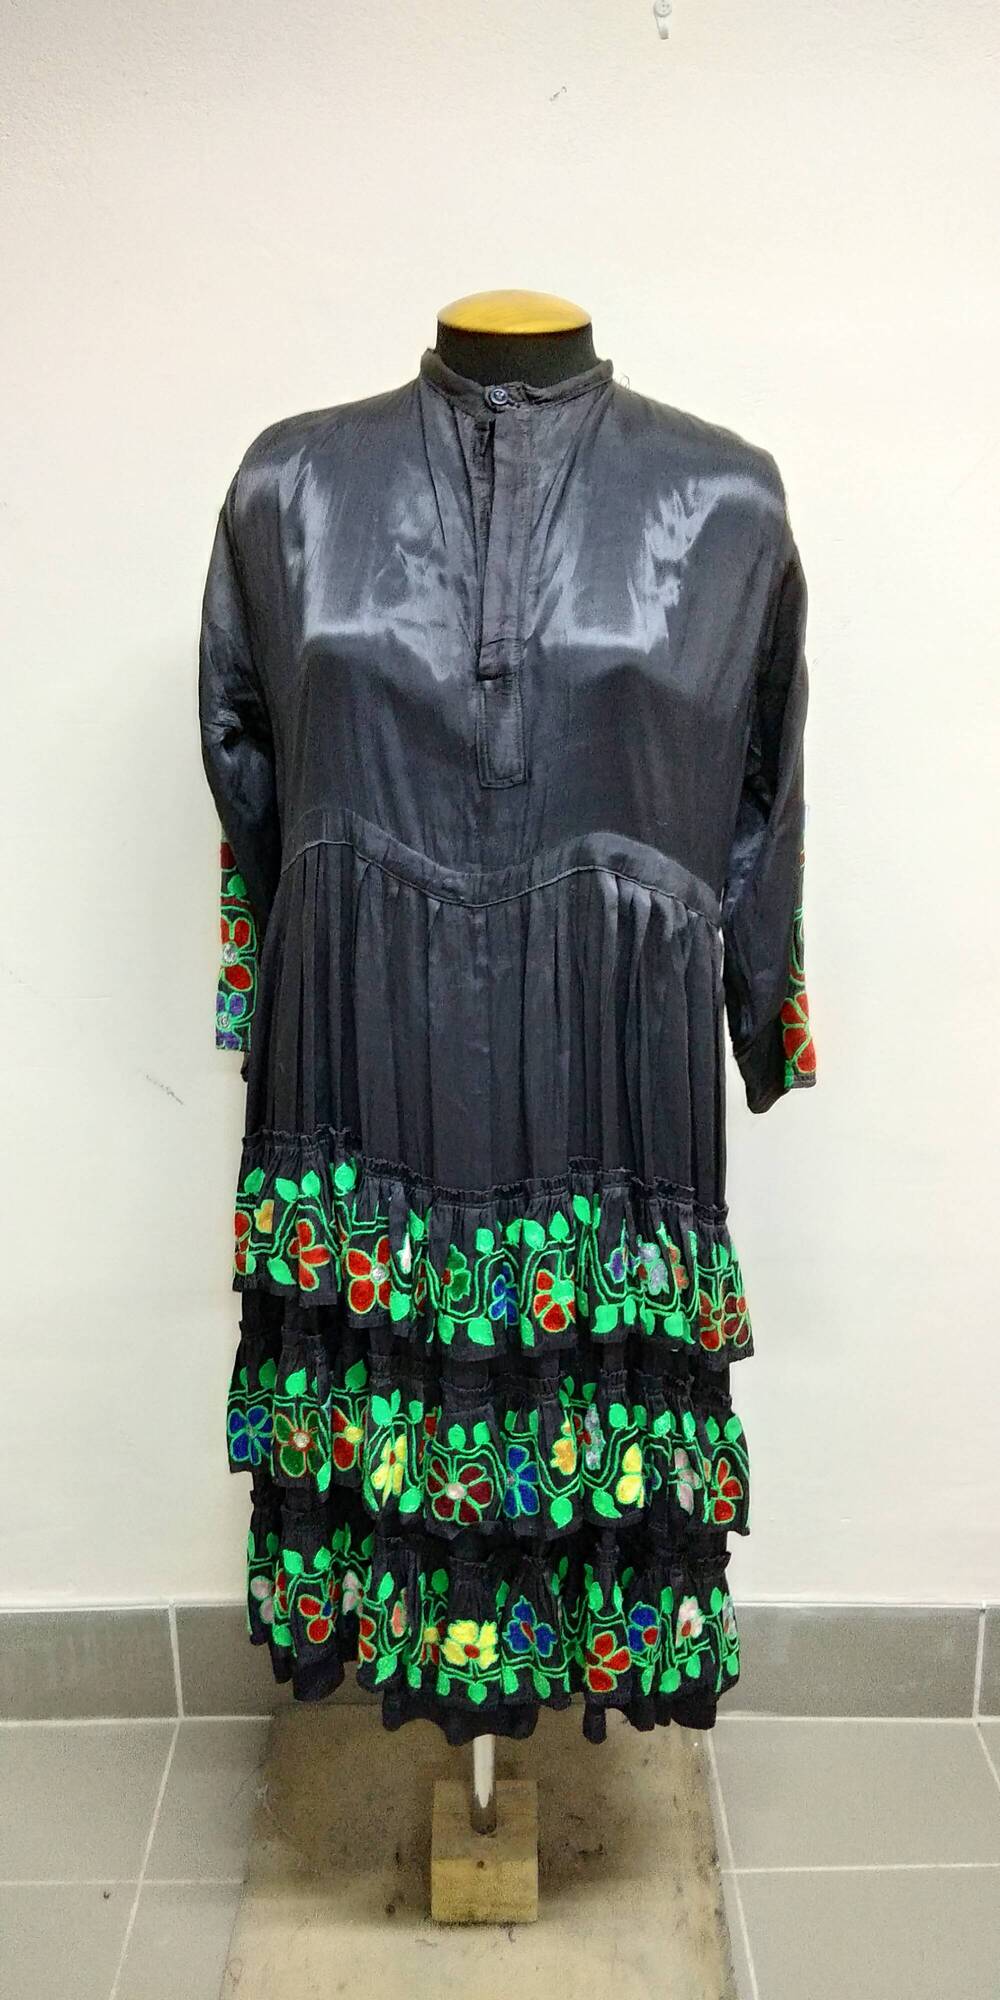 Платье татарское(?) черного цвета, украшено вышивкой тамбурным швом.